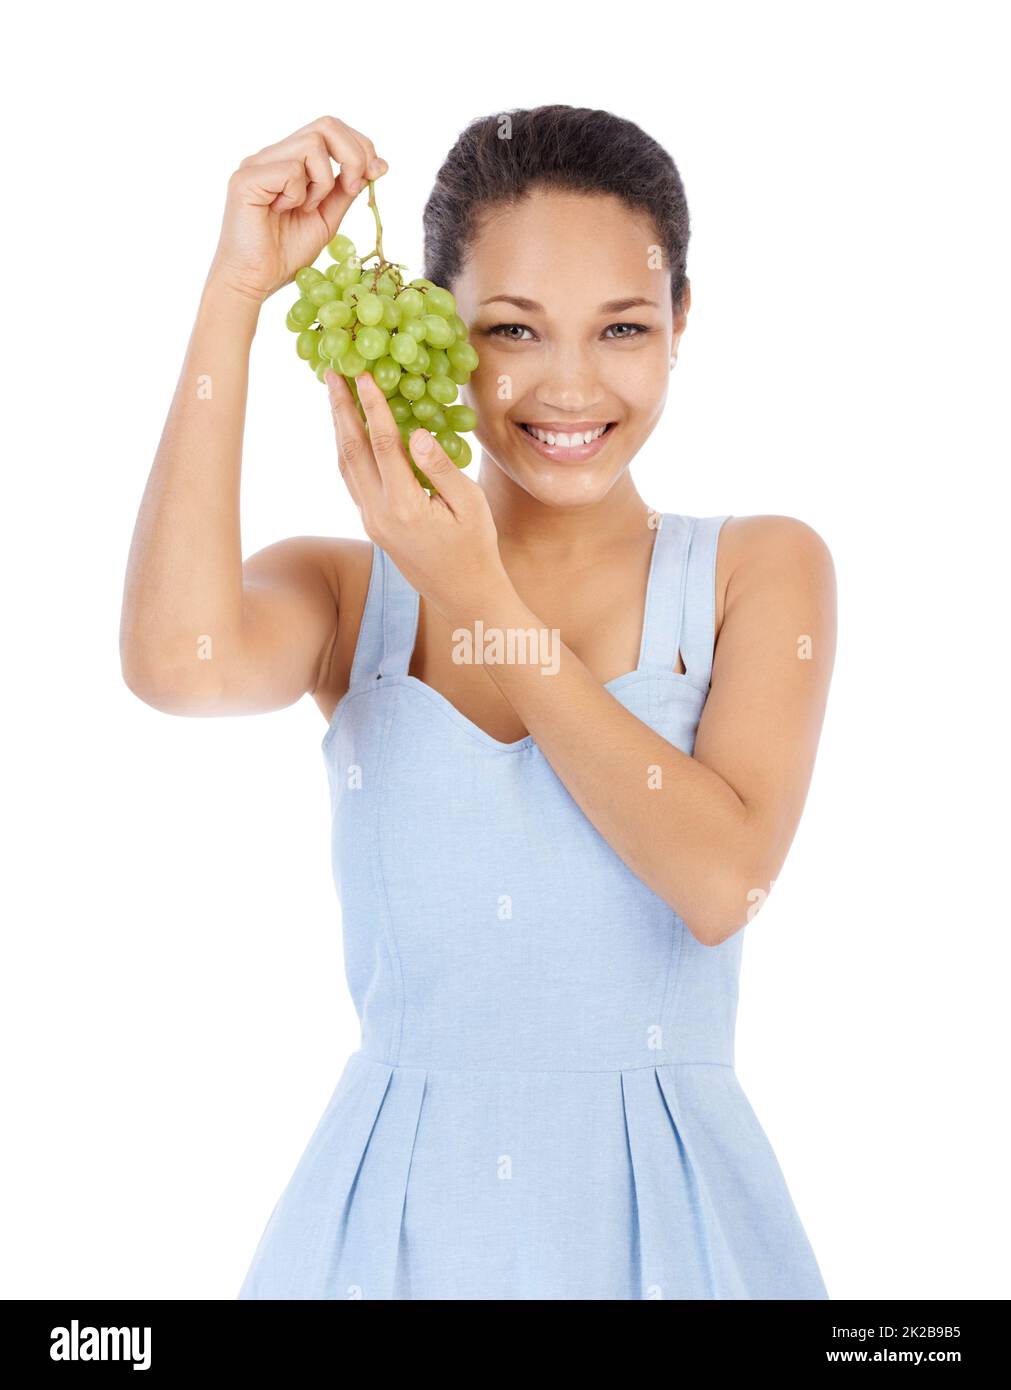 Frisch und saftig. Junge Frau lächelt, während sie ein Traubenbündel hochhält - isoliert auf Weiß. Stockfoto